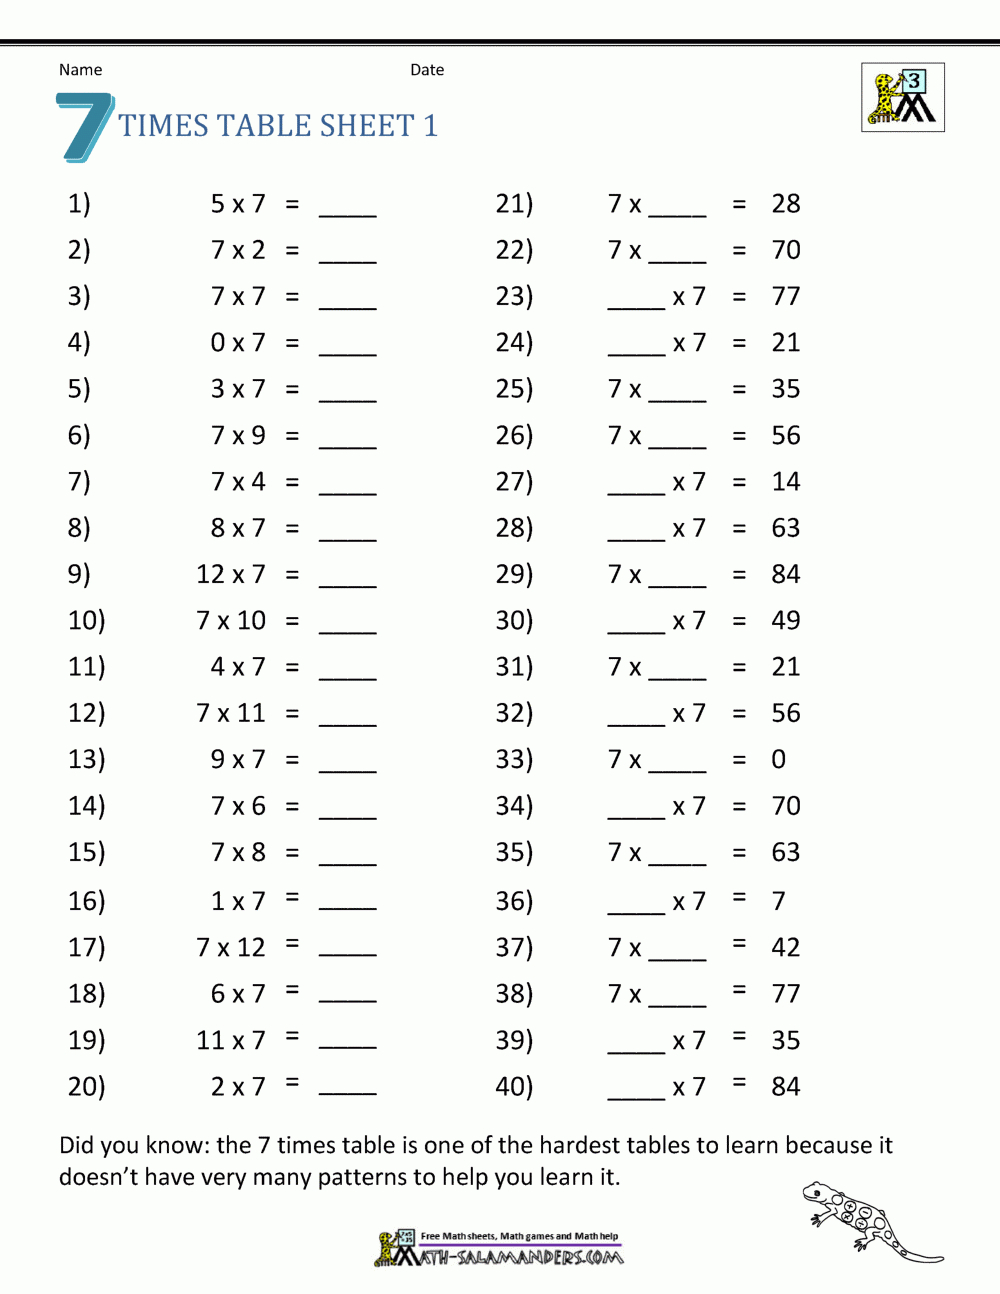 Multiplication Drill Sheets 3Rd Grade inside Free Printable Multiplication Drills